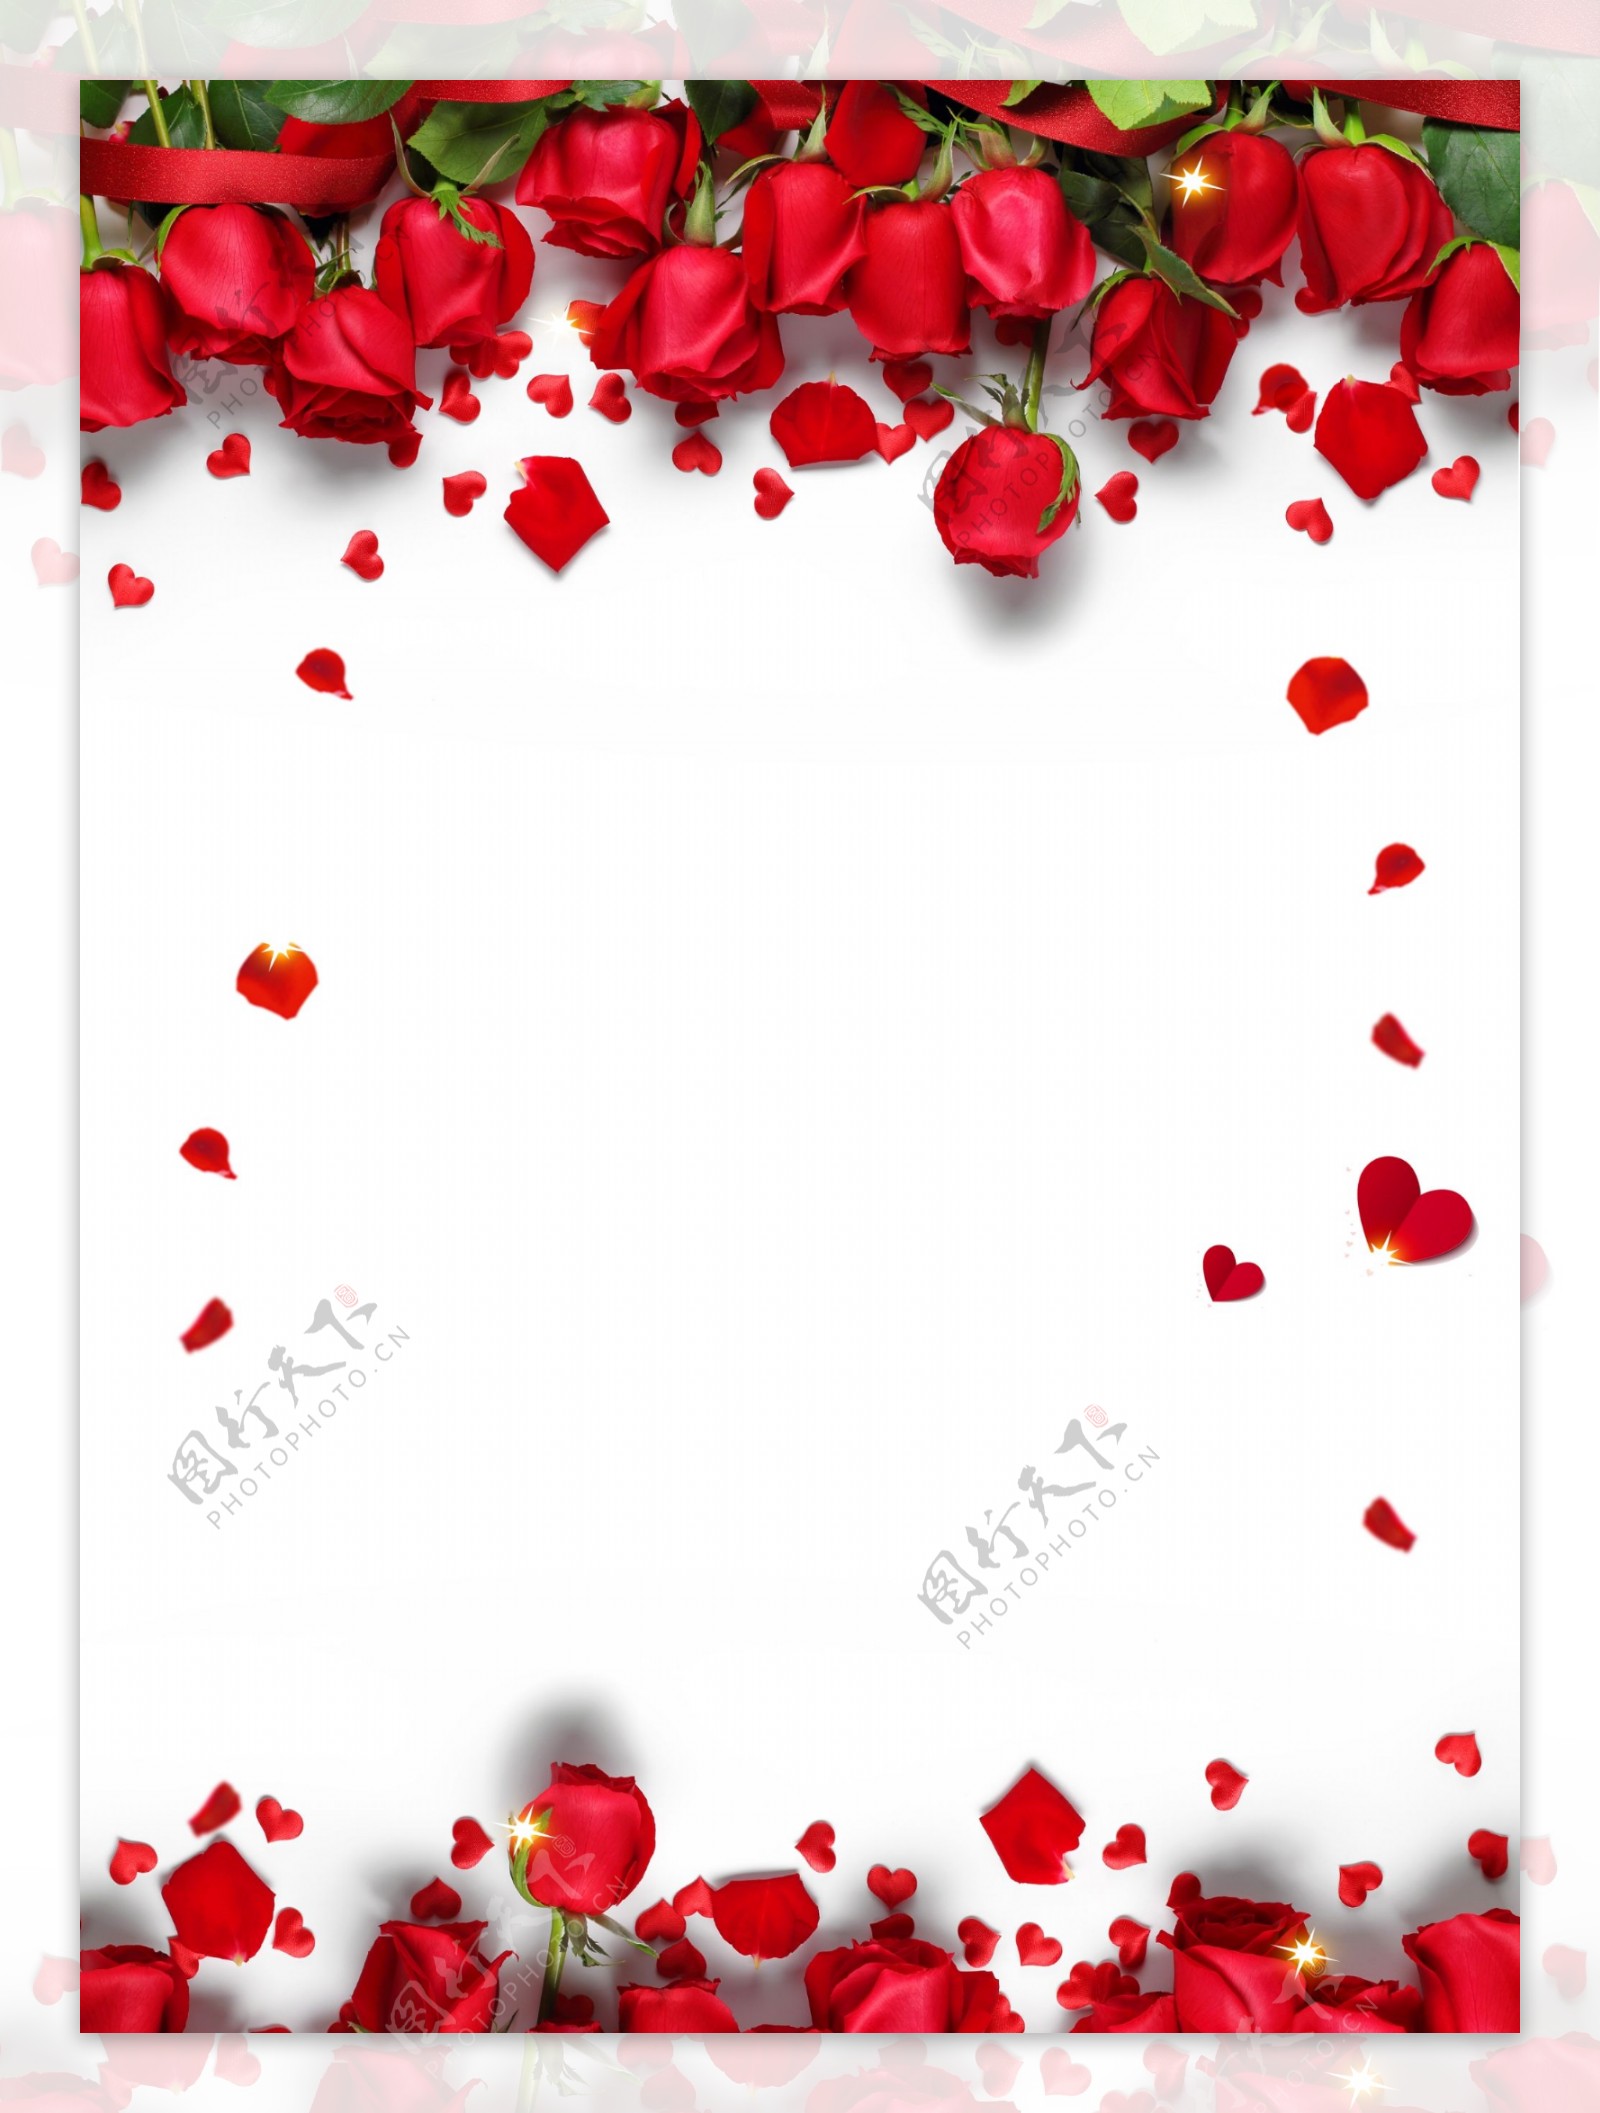 浪漫七夕情人节红色玫瑰花瓣背景设计